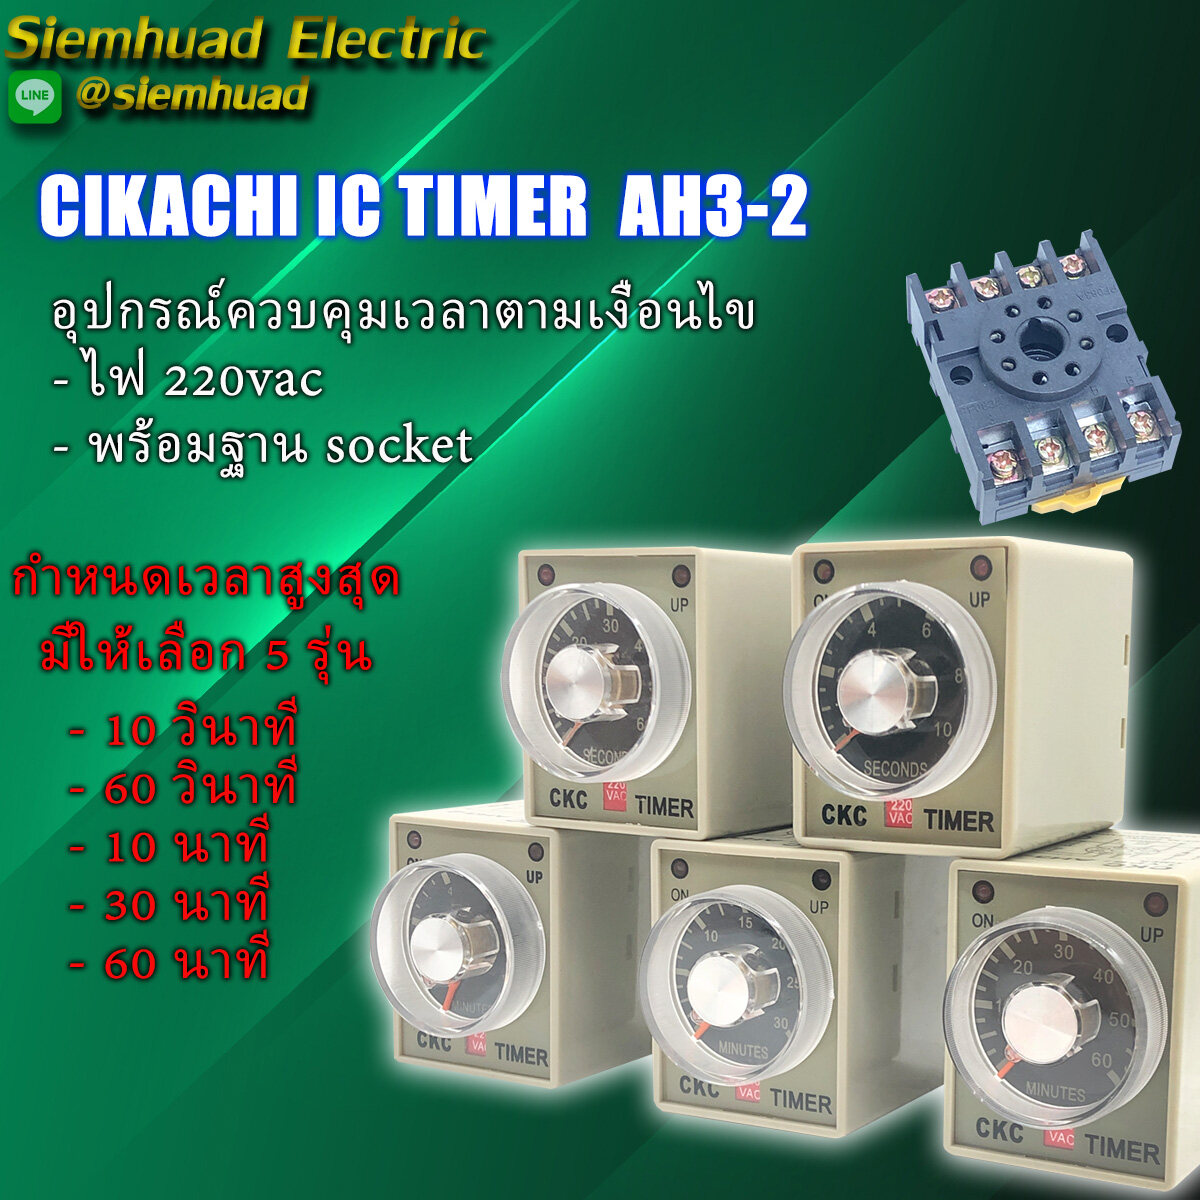 Cikachi IC Timer AH3-2  อุปกรณ์ควบคุมเวลาการทำงานของอุปกรณ์ สำหรับตู้ควบคุมไฟฟ้า ตู้คอนโทรลต่างๆ  มีช่วงเวลาให้เลือก 5 รุ่น